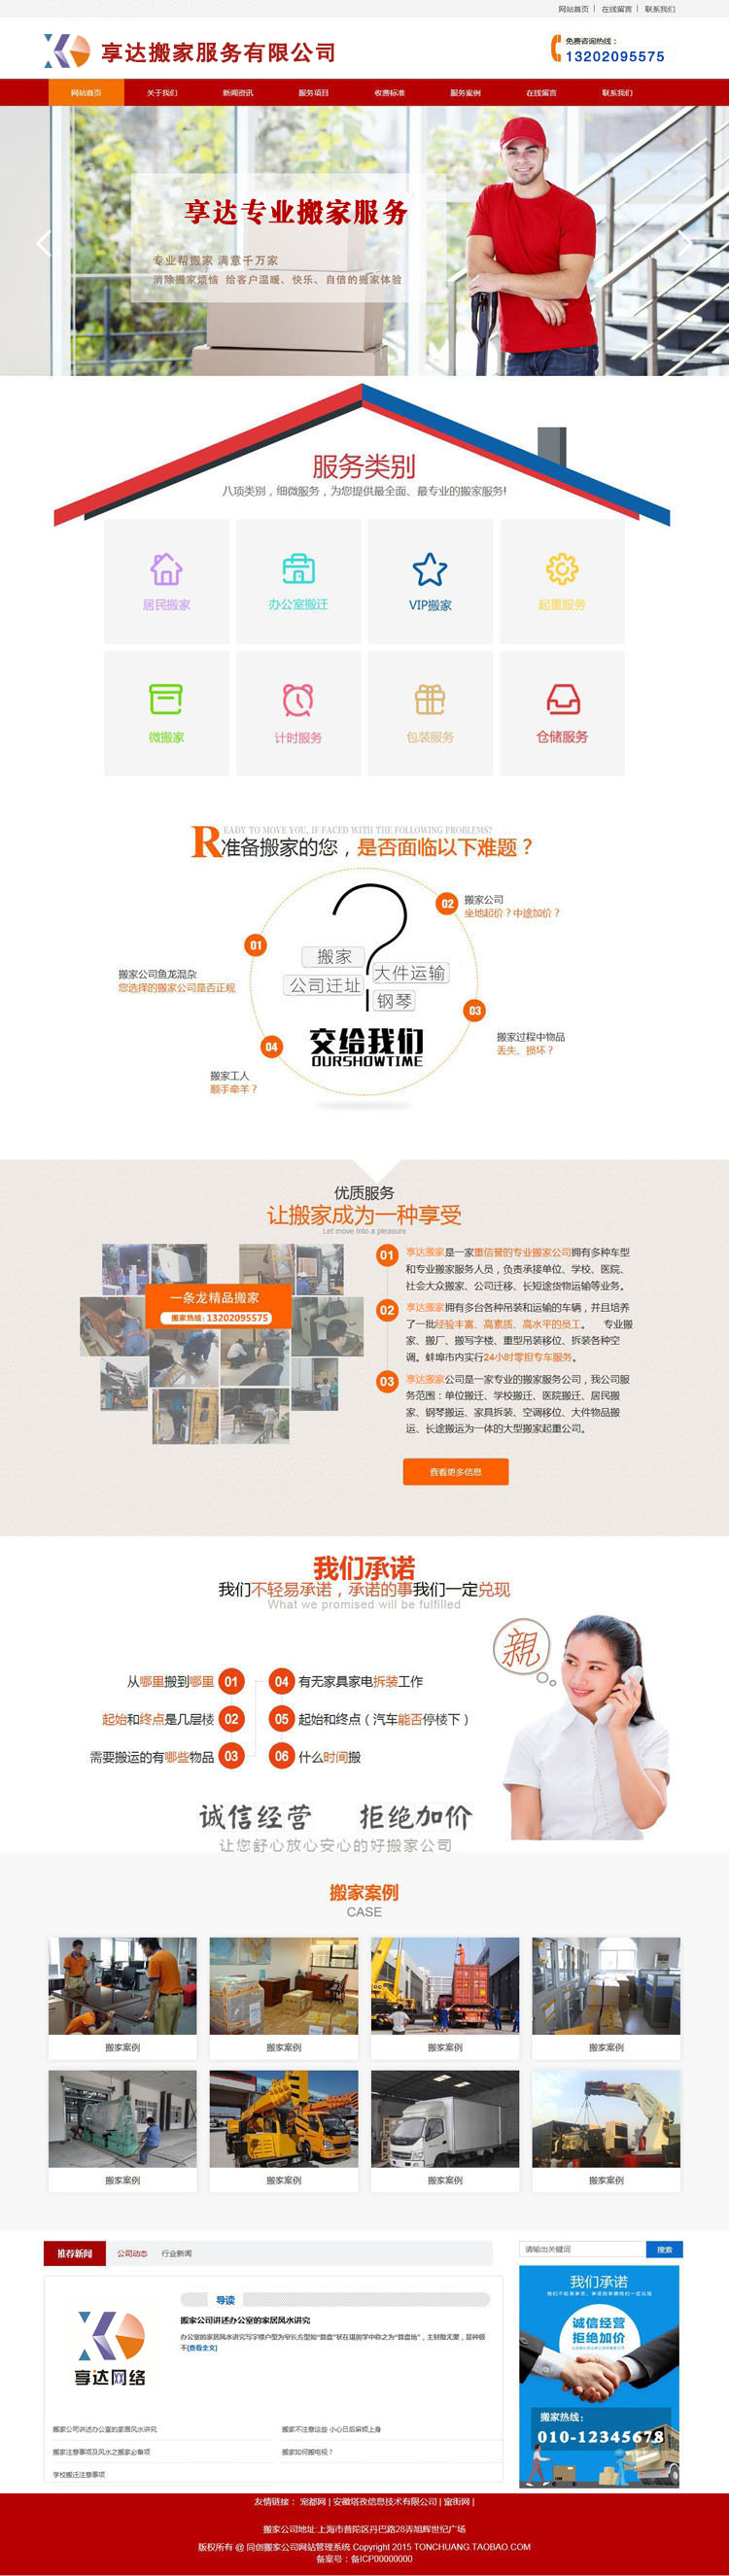 湖南企业网站建设 | 980元制作个搬家搬厂服务公司网站图片